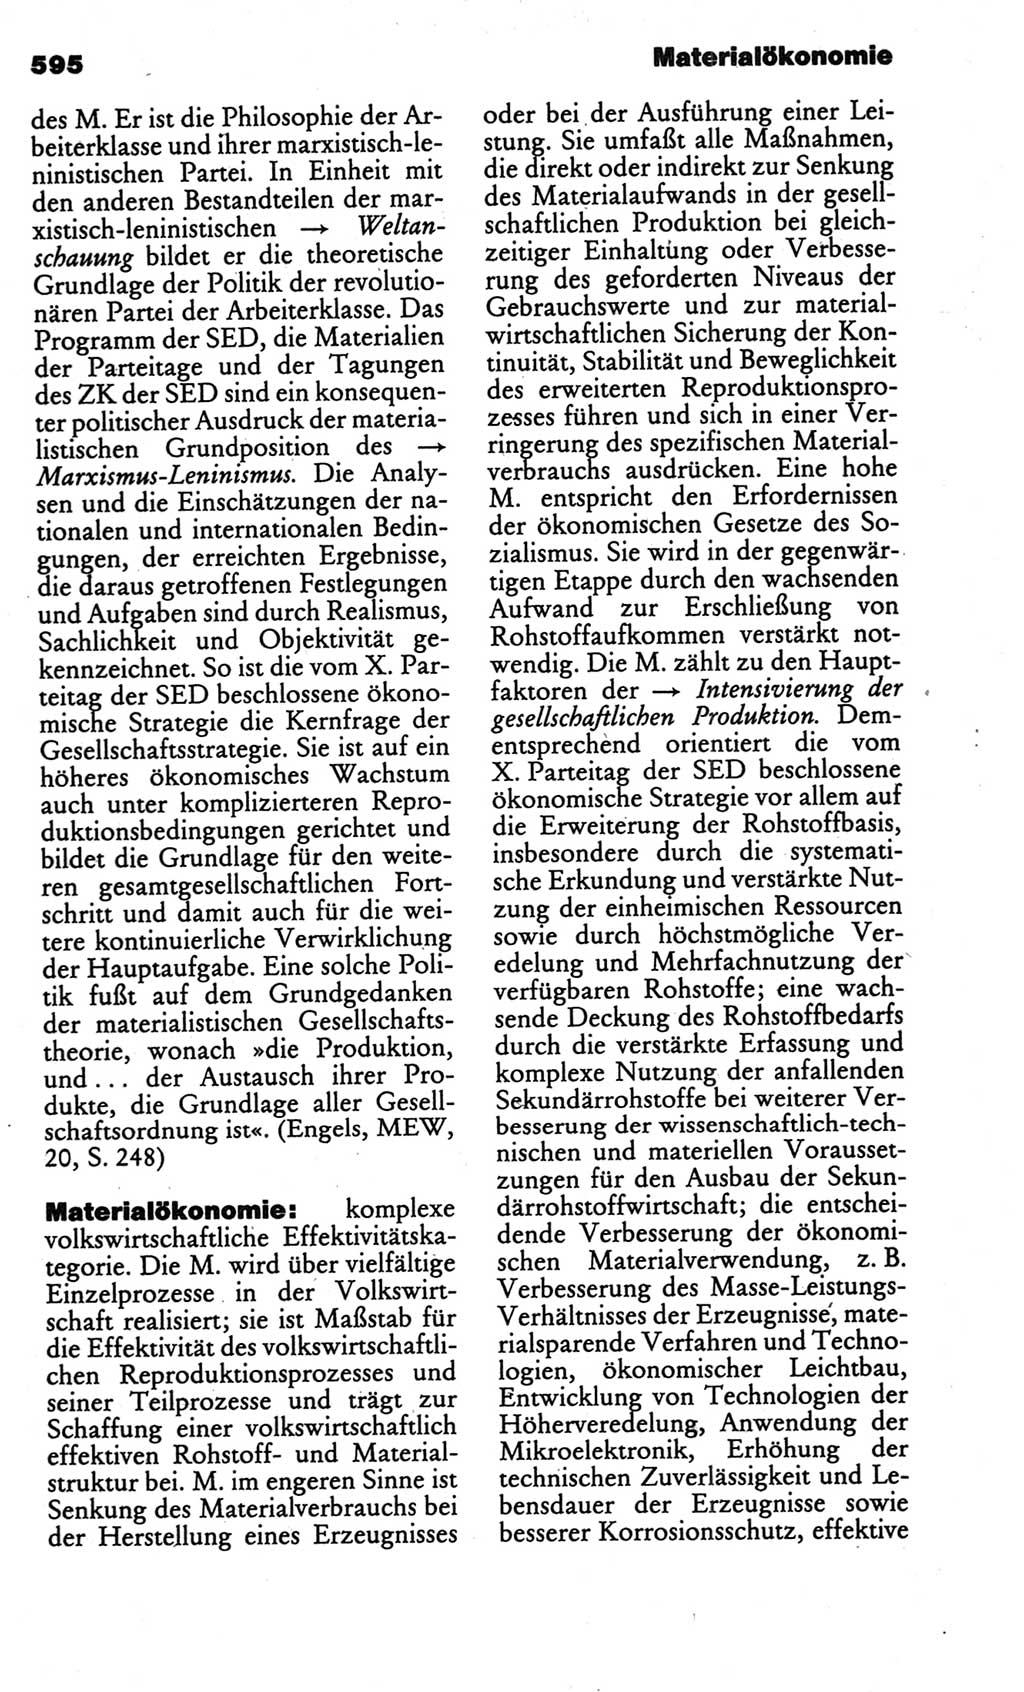 Kleines politisches Wörterbuch [Deutsche Demokratische Republik (DDR)] 1986, Seite 595 (Kl. pol. Wb. DDR 1986, S. 595)